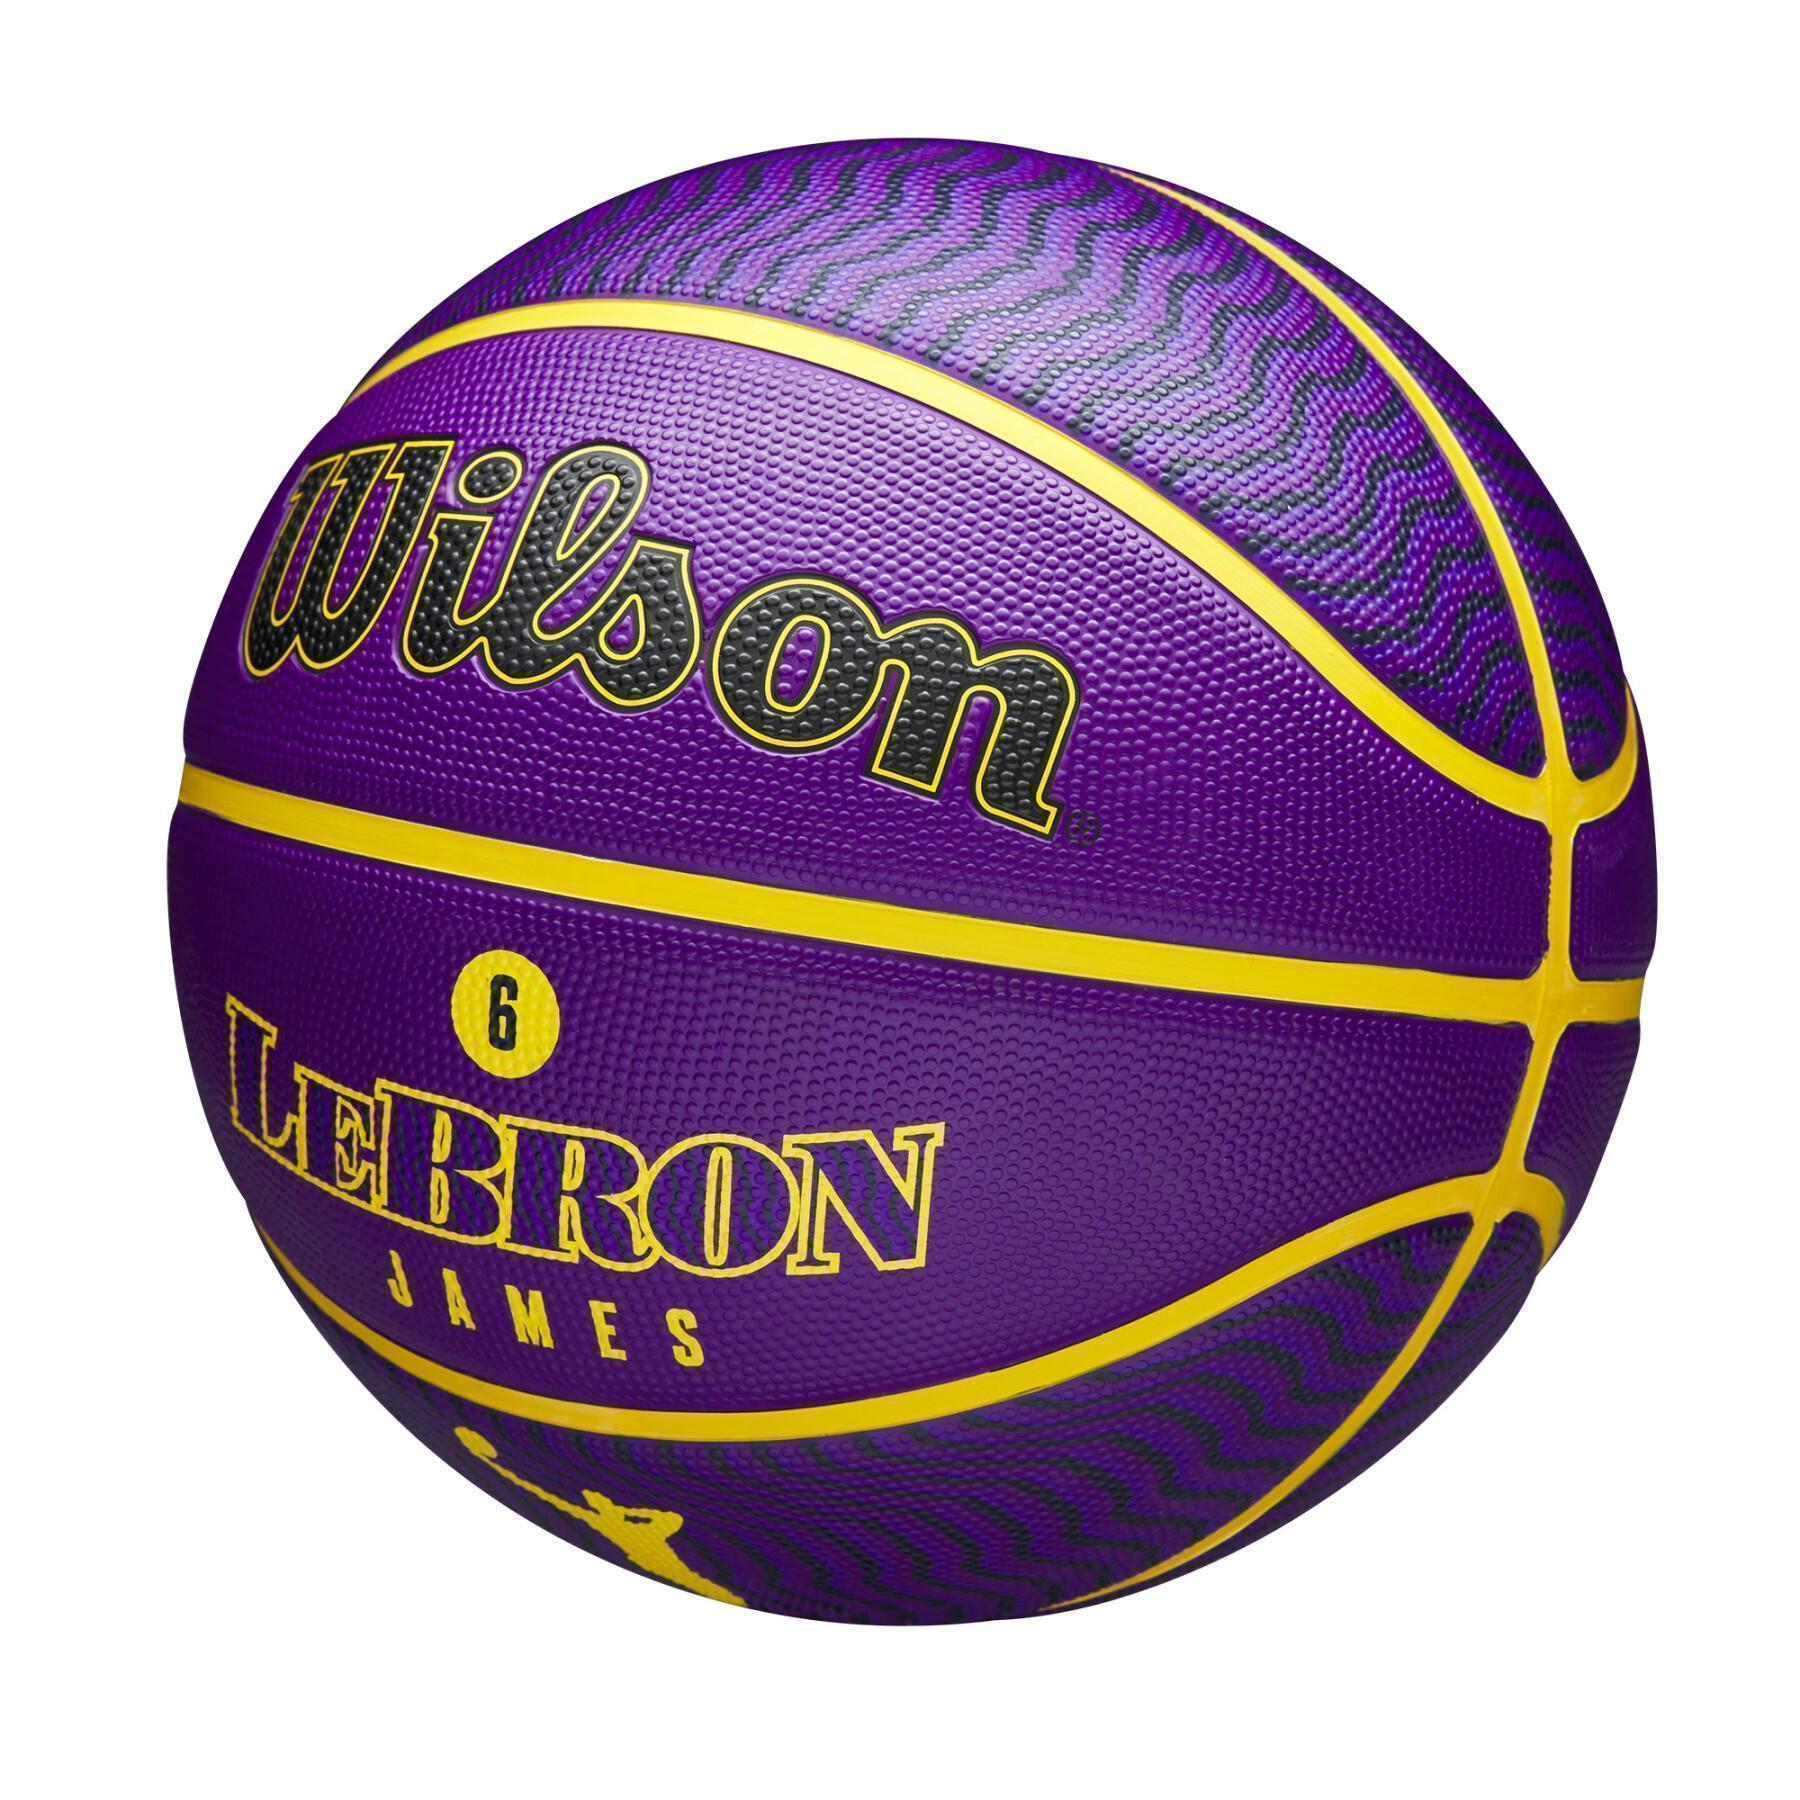 Ballong Wilson NBA Icon Lebron James